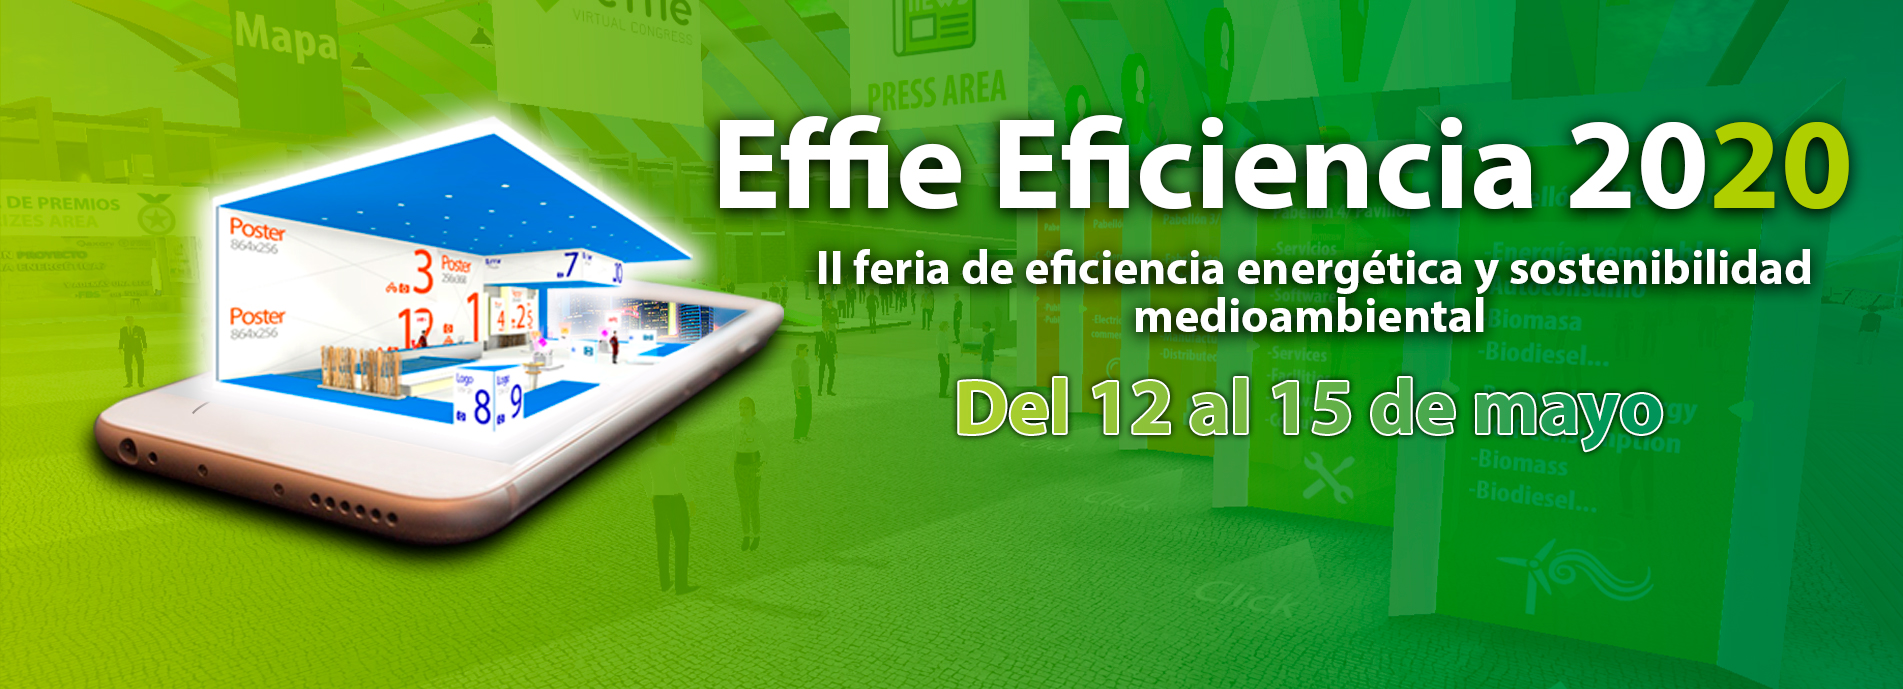 Effie Eficiencia - II Feria de Eficiencia y Sostenibilidad Medioambiental